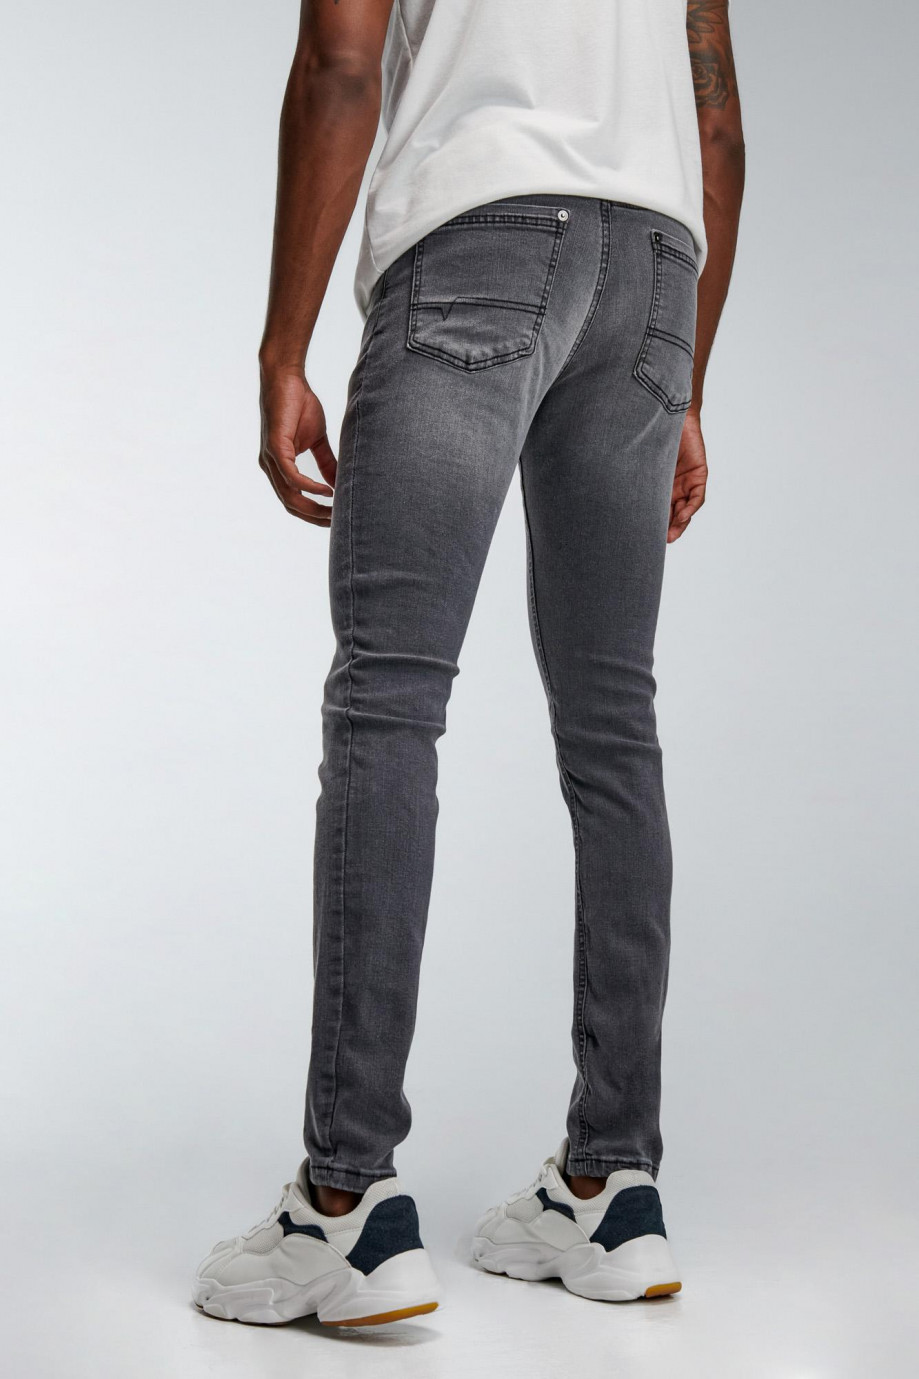 Jean skinny gris oscuro con costuras negras y 5 bolsillos